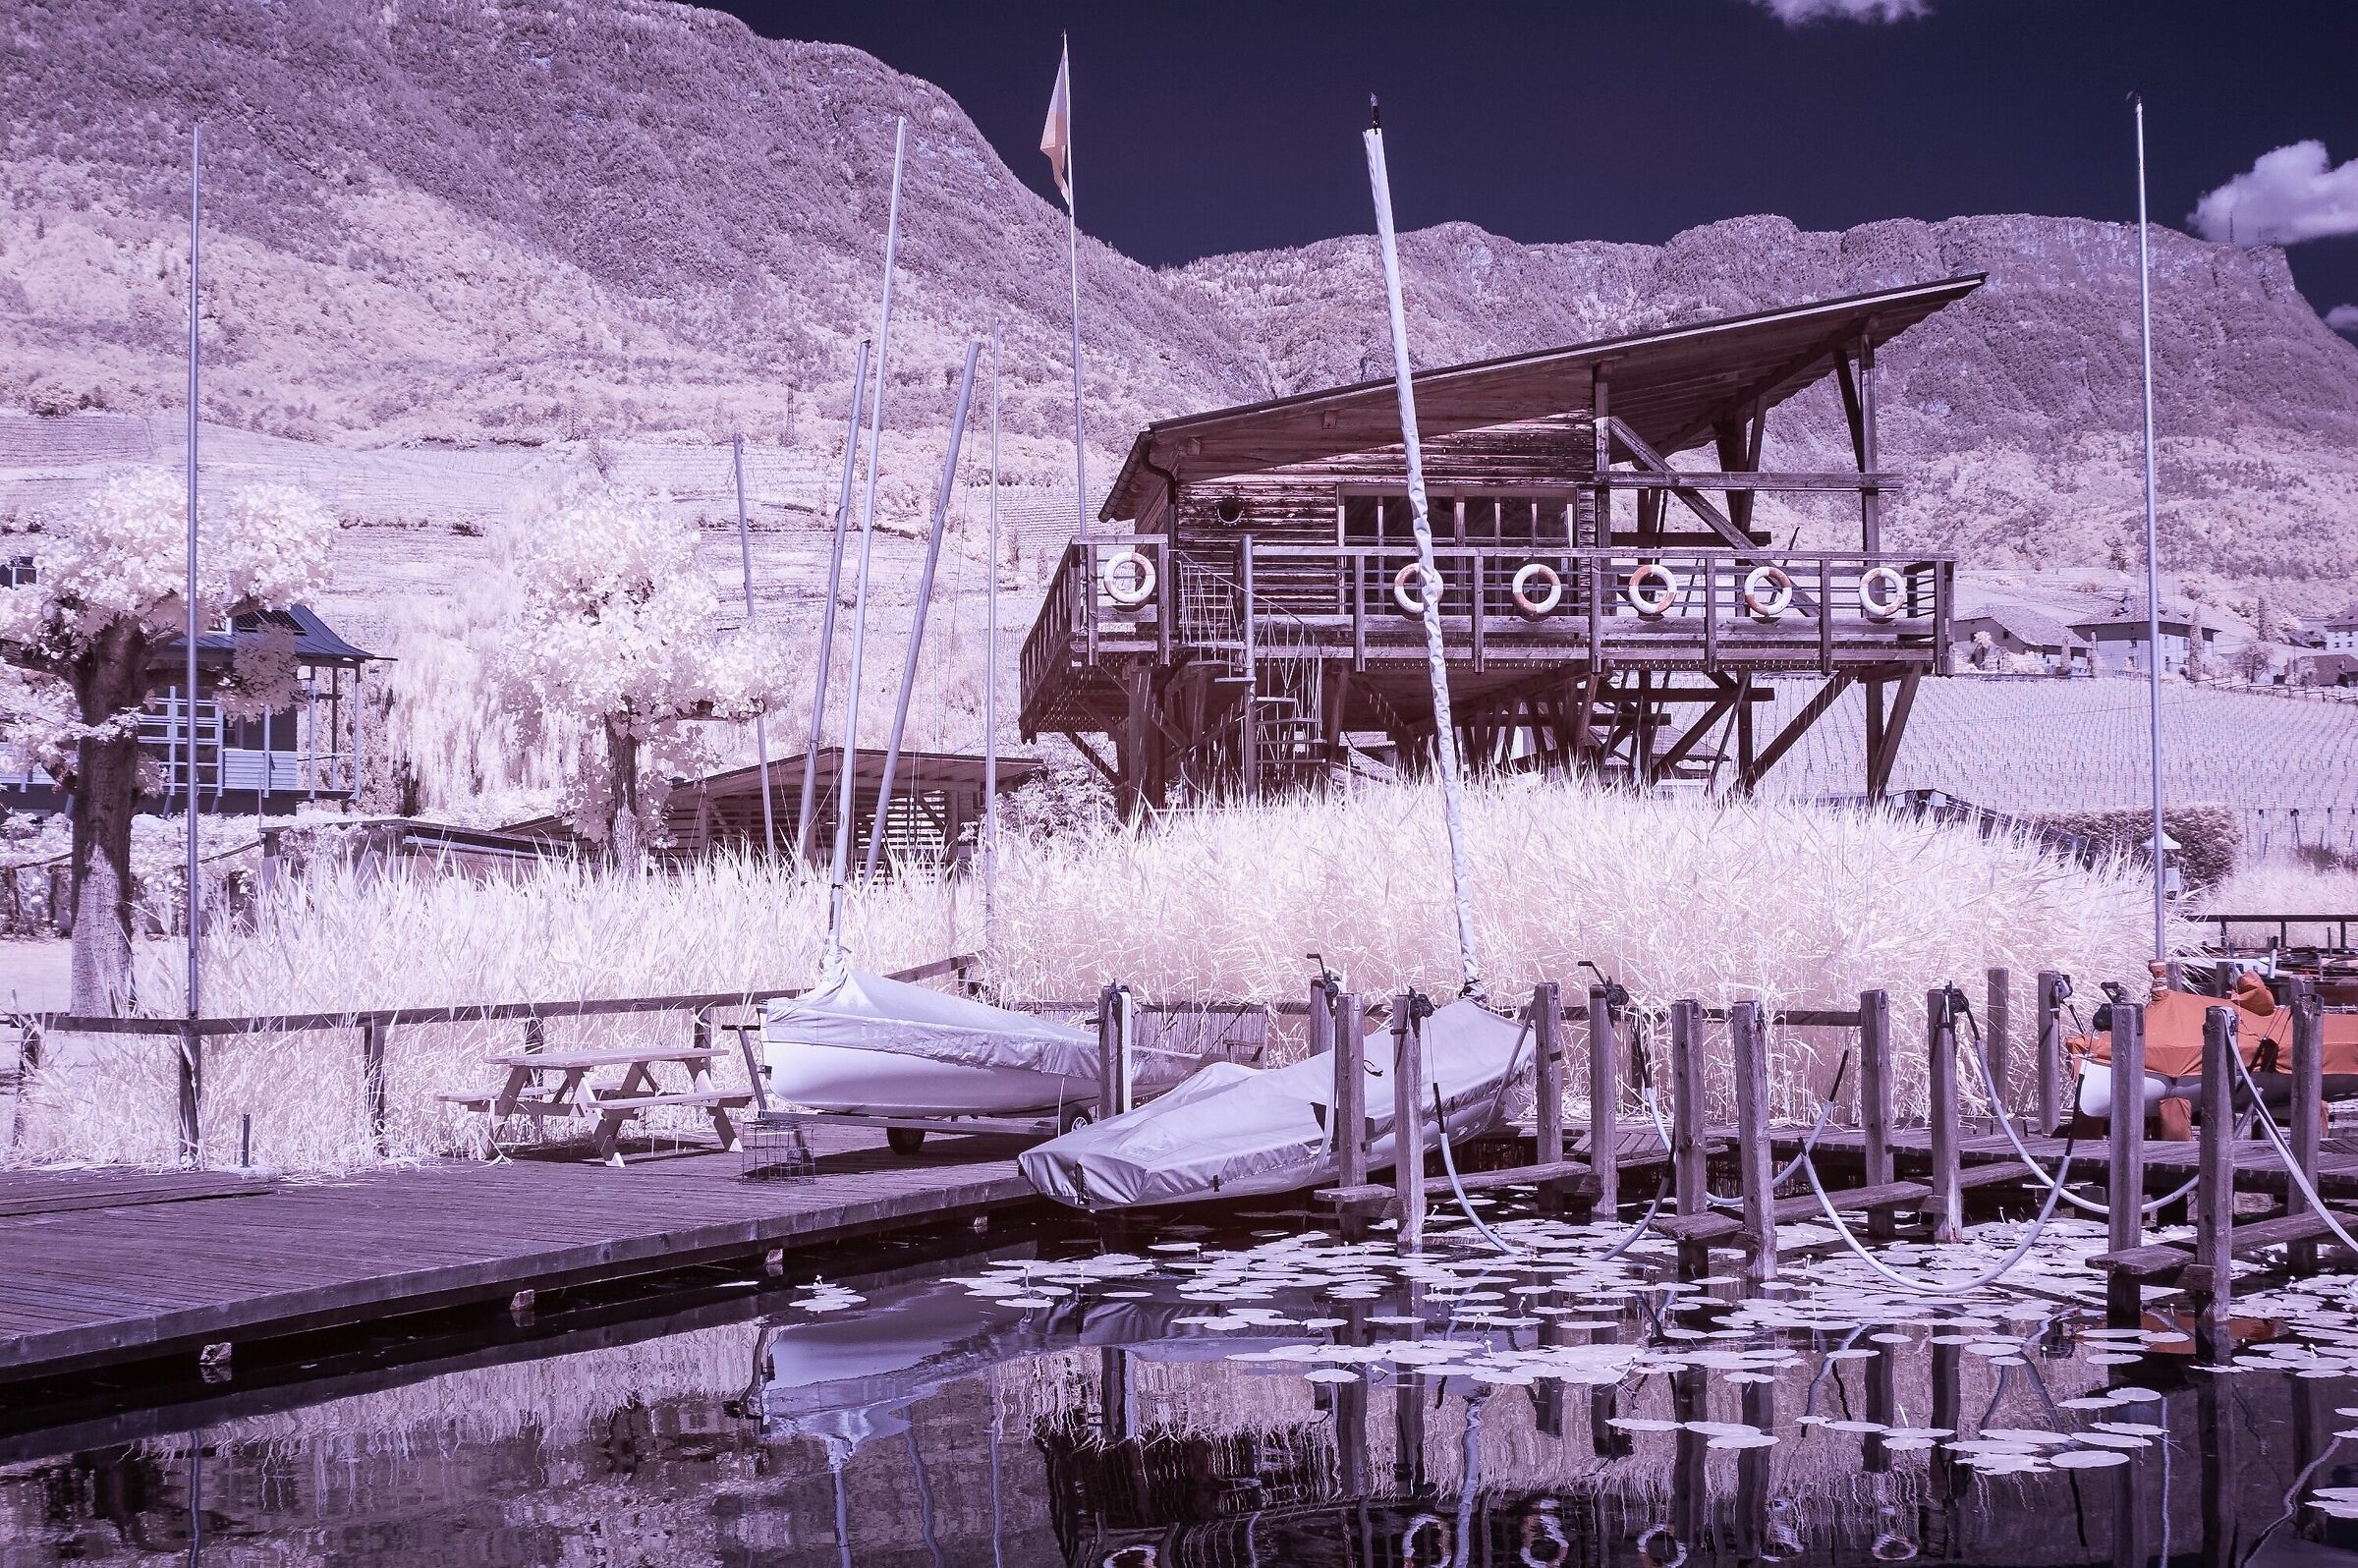 Paesaggio al lago di Caldaro con luce all'infrarosso 1...